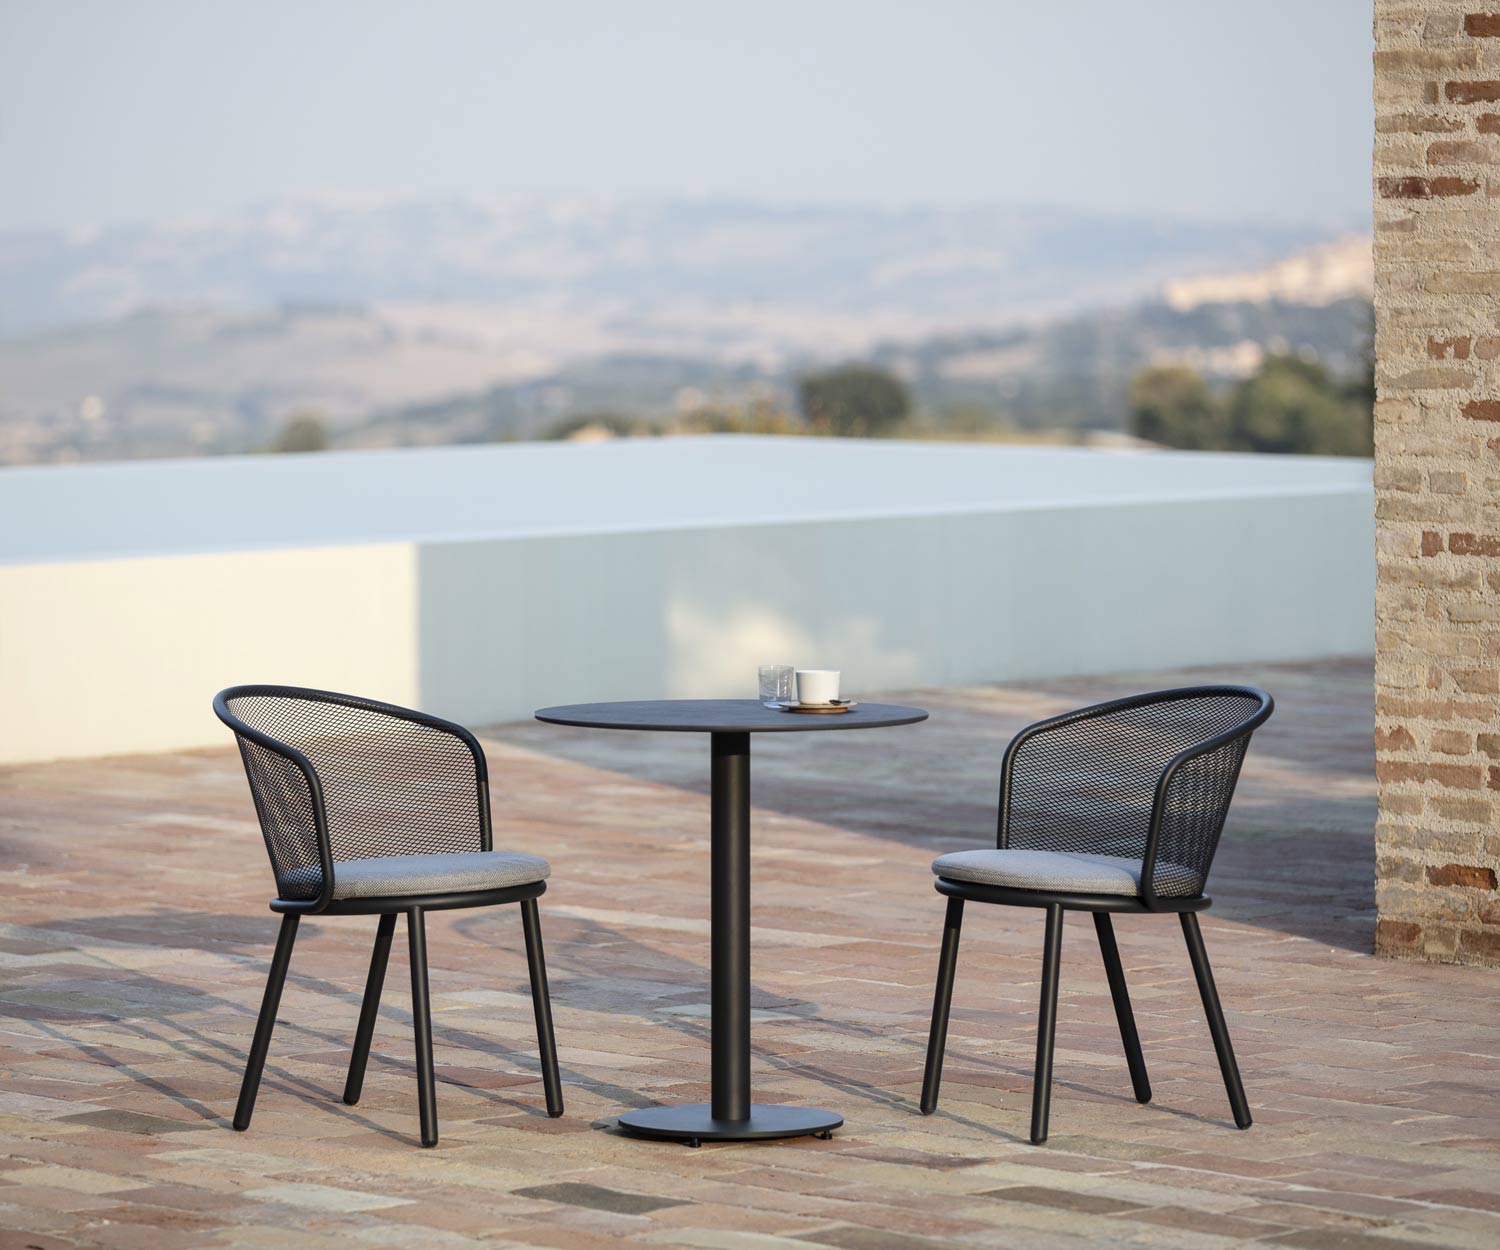 Haute qualité Todus Baza Design Chaise de jardin avec table d'appoint sur la terrasse